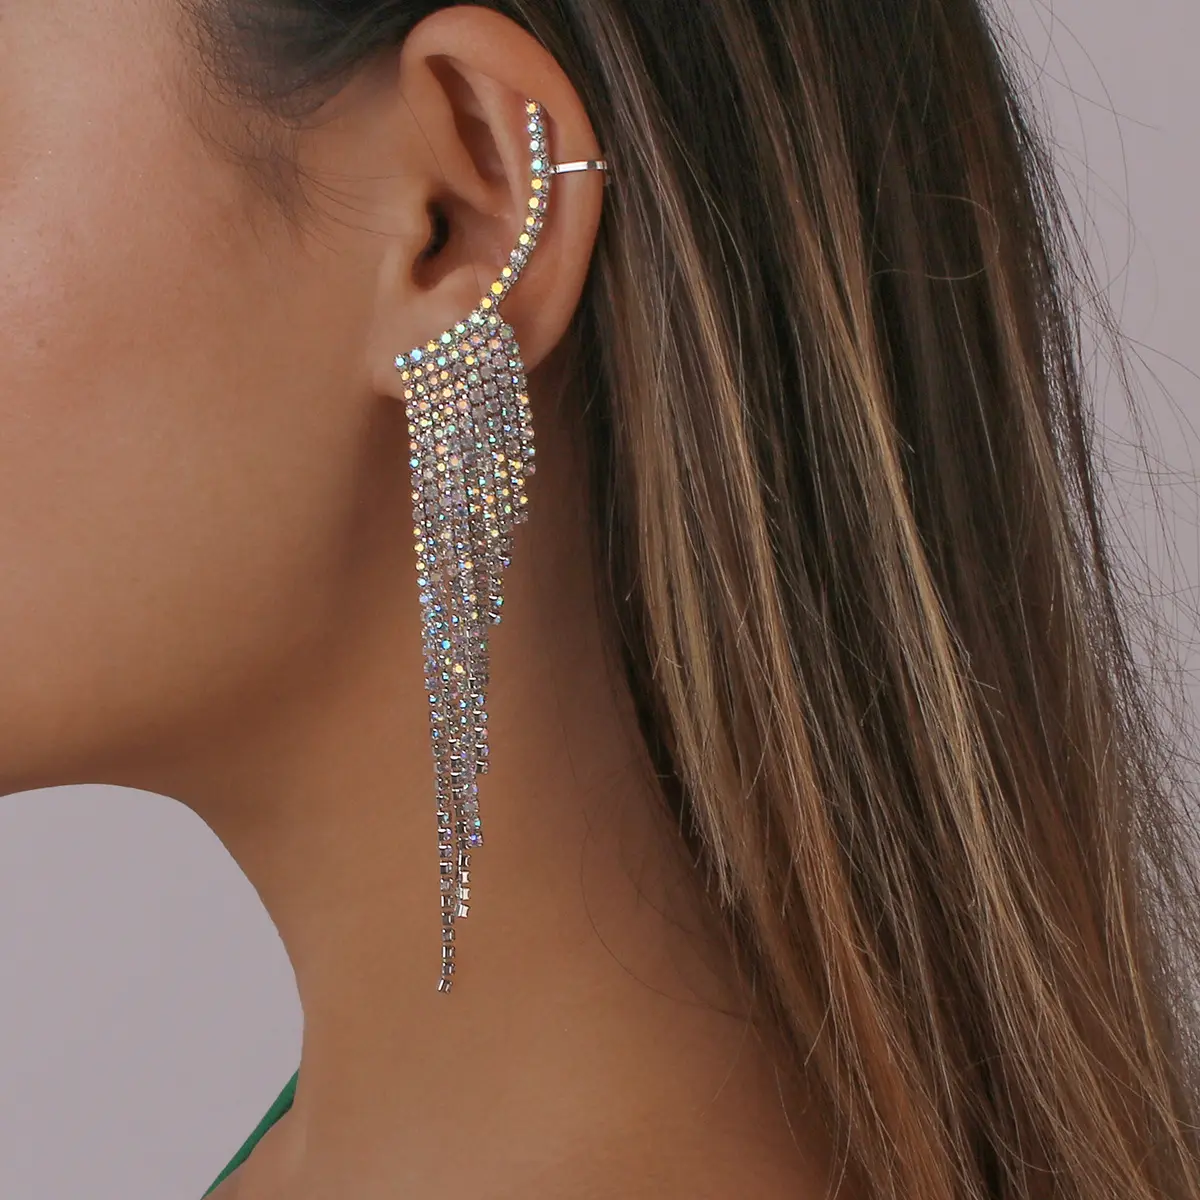 2022 New Stylish Jewelry Frauen Mädchen übertriebene Quaste Manschette Ohrringe Bankett Party Geometrische beliebte Strass Ohrringe